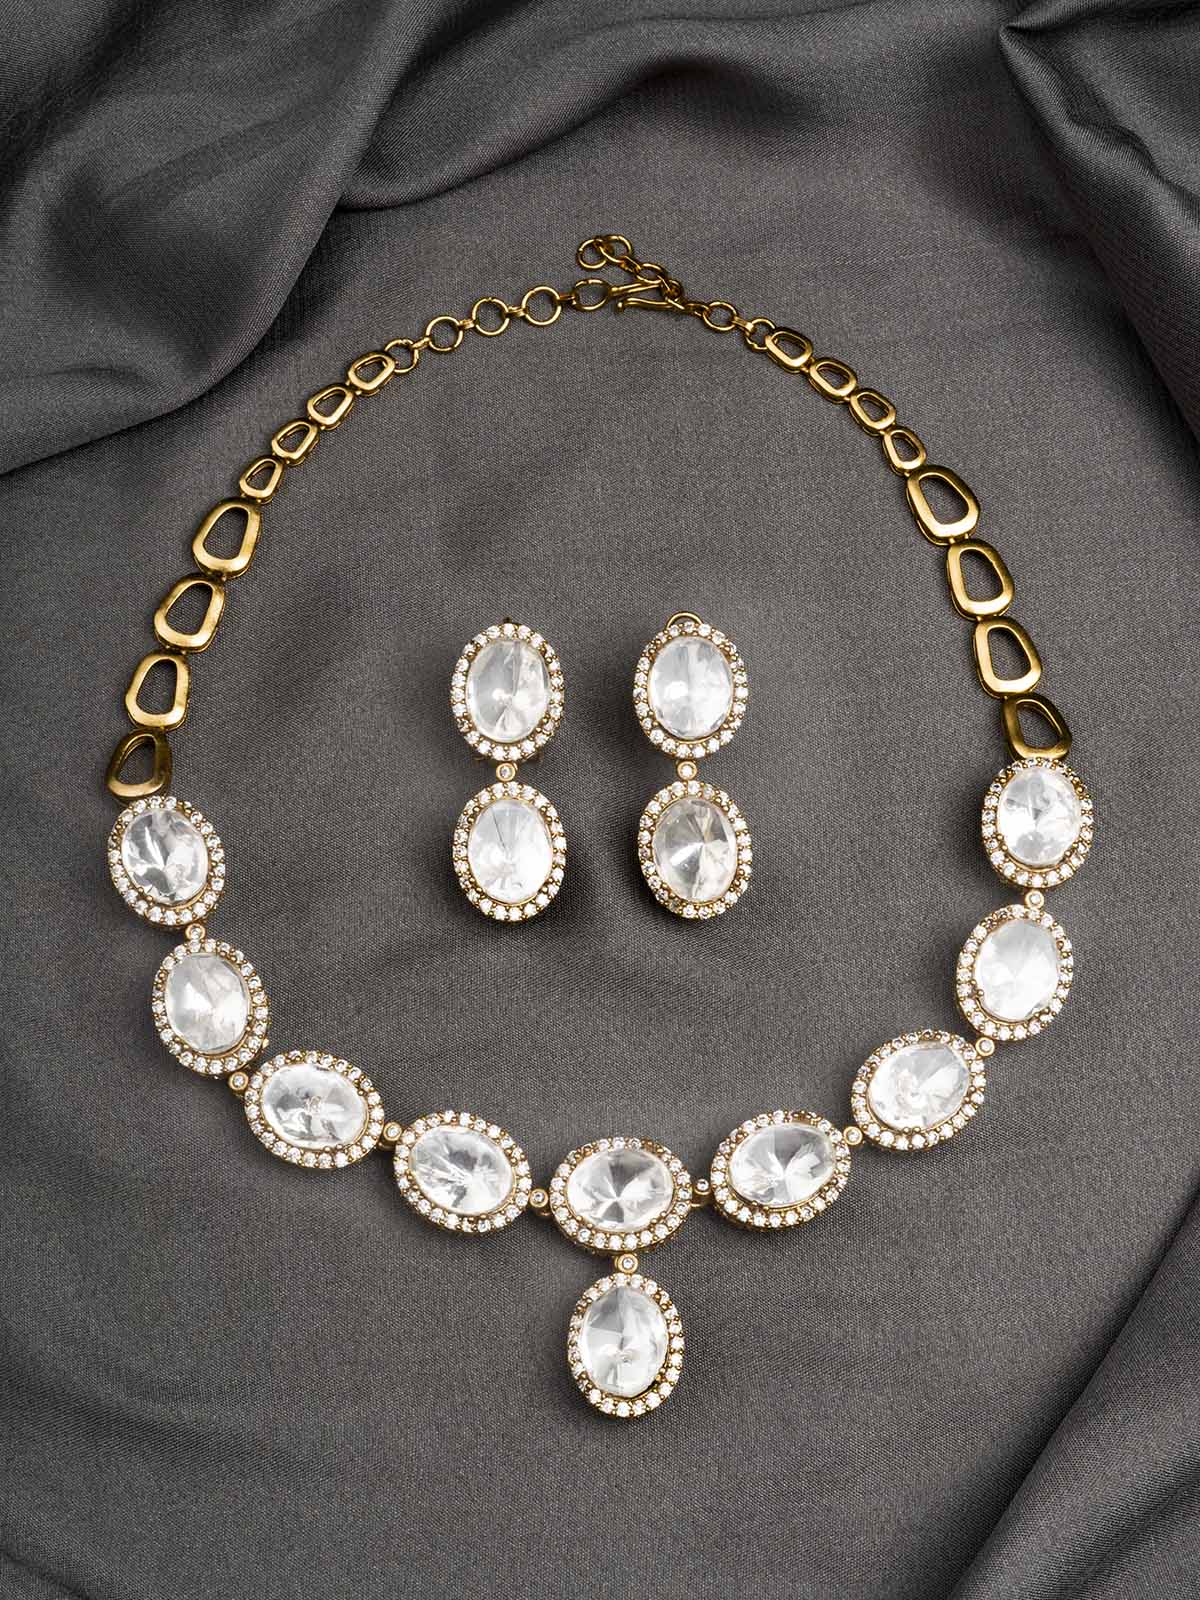 PK-S127 - White Color Faux Diamond Short Necklace Set